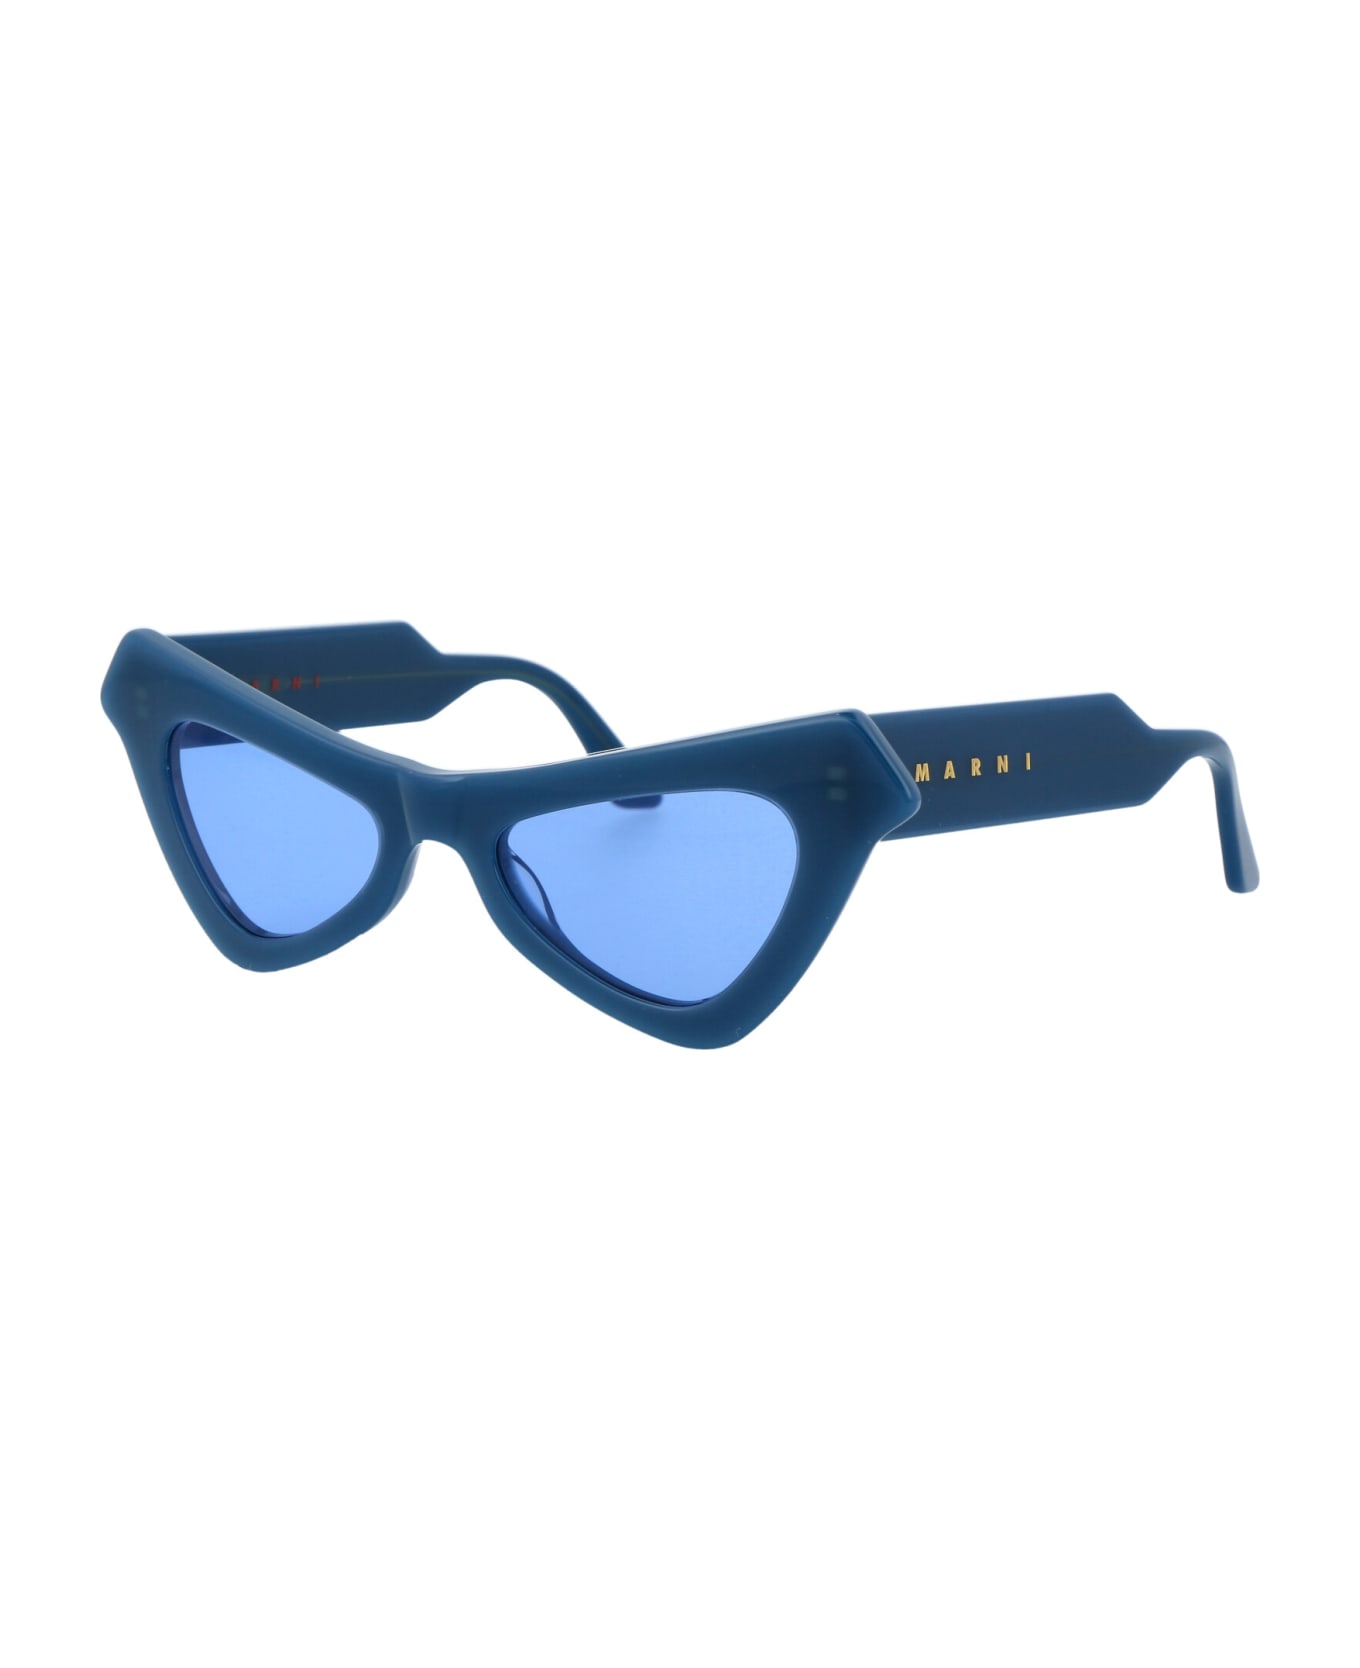 Marni Eyewear Fairy Pools Sunglasses - POOLS BLUE